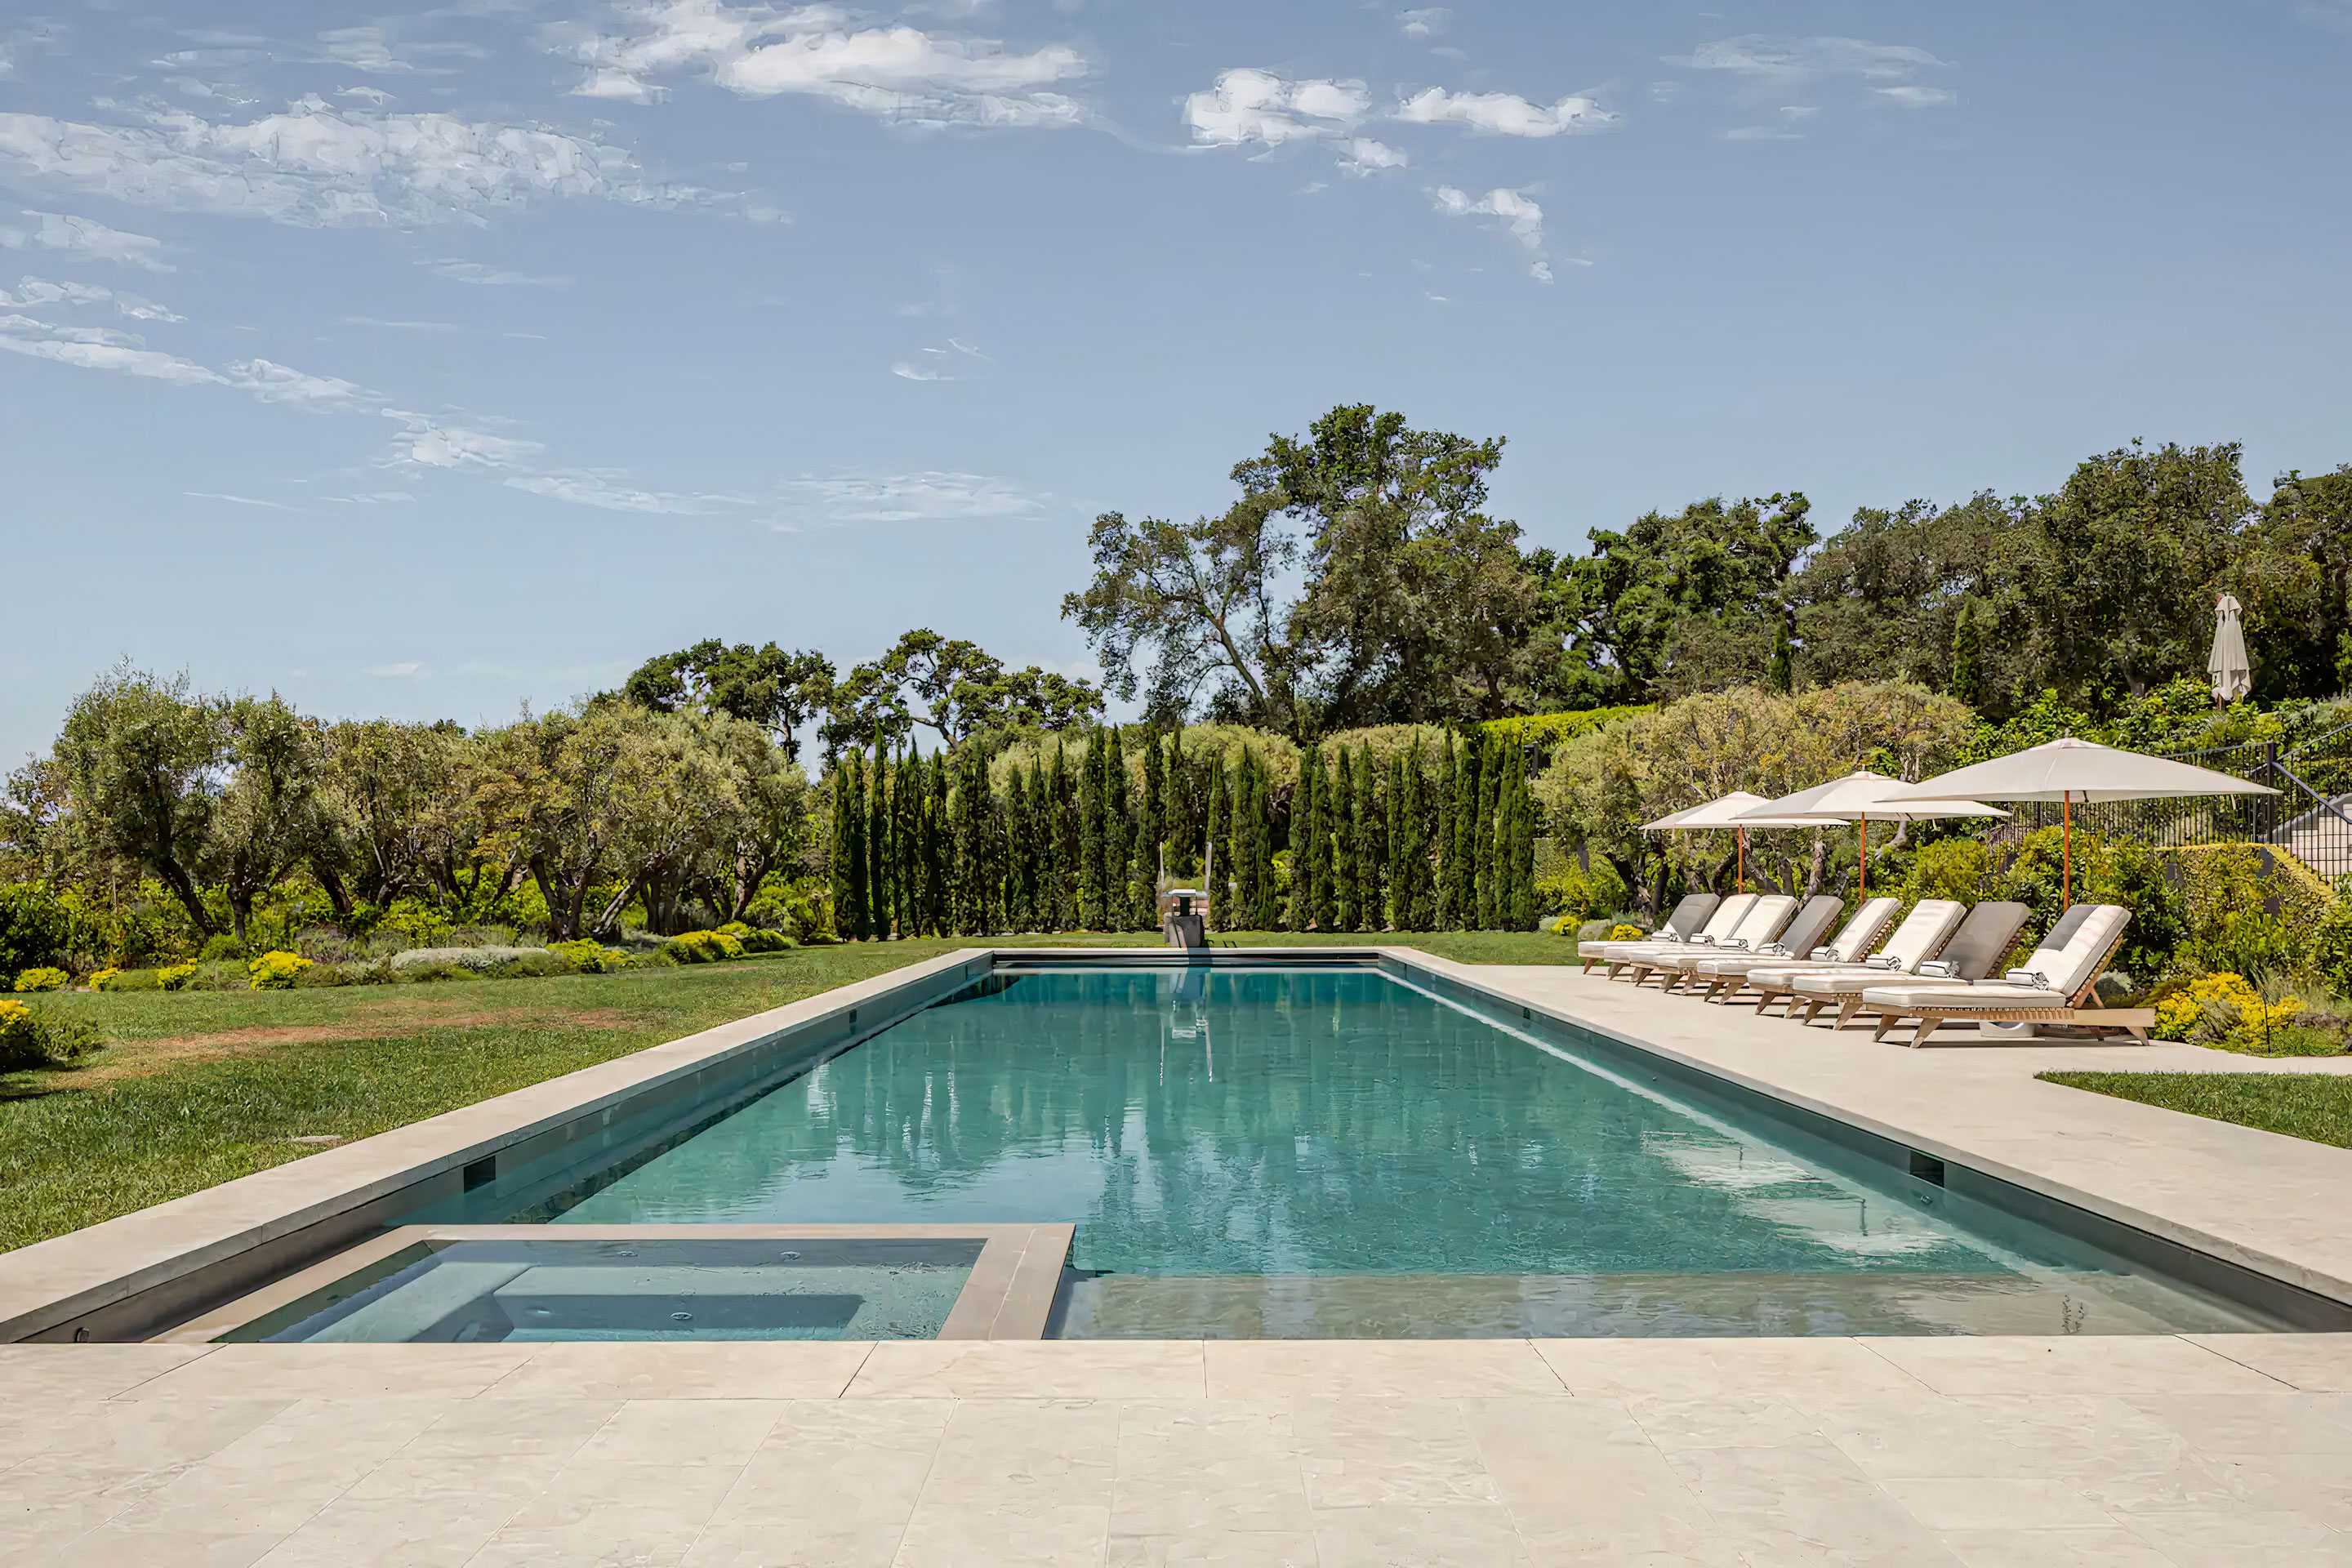 La piscina de la casa de Gwyneth Paltrow